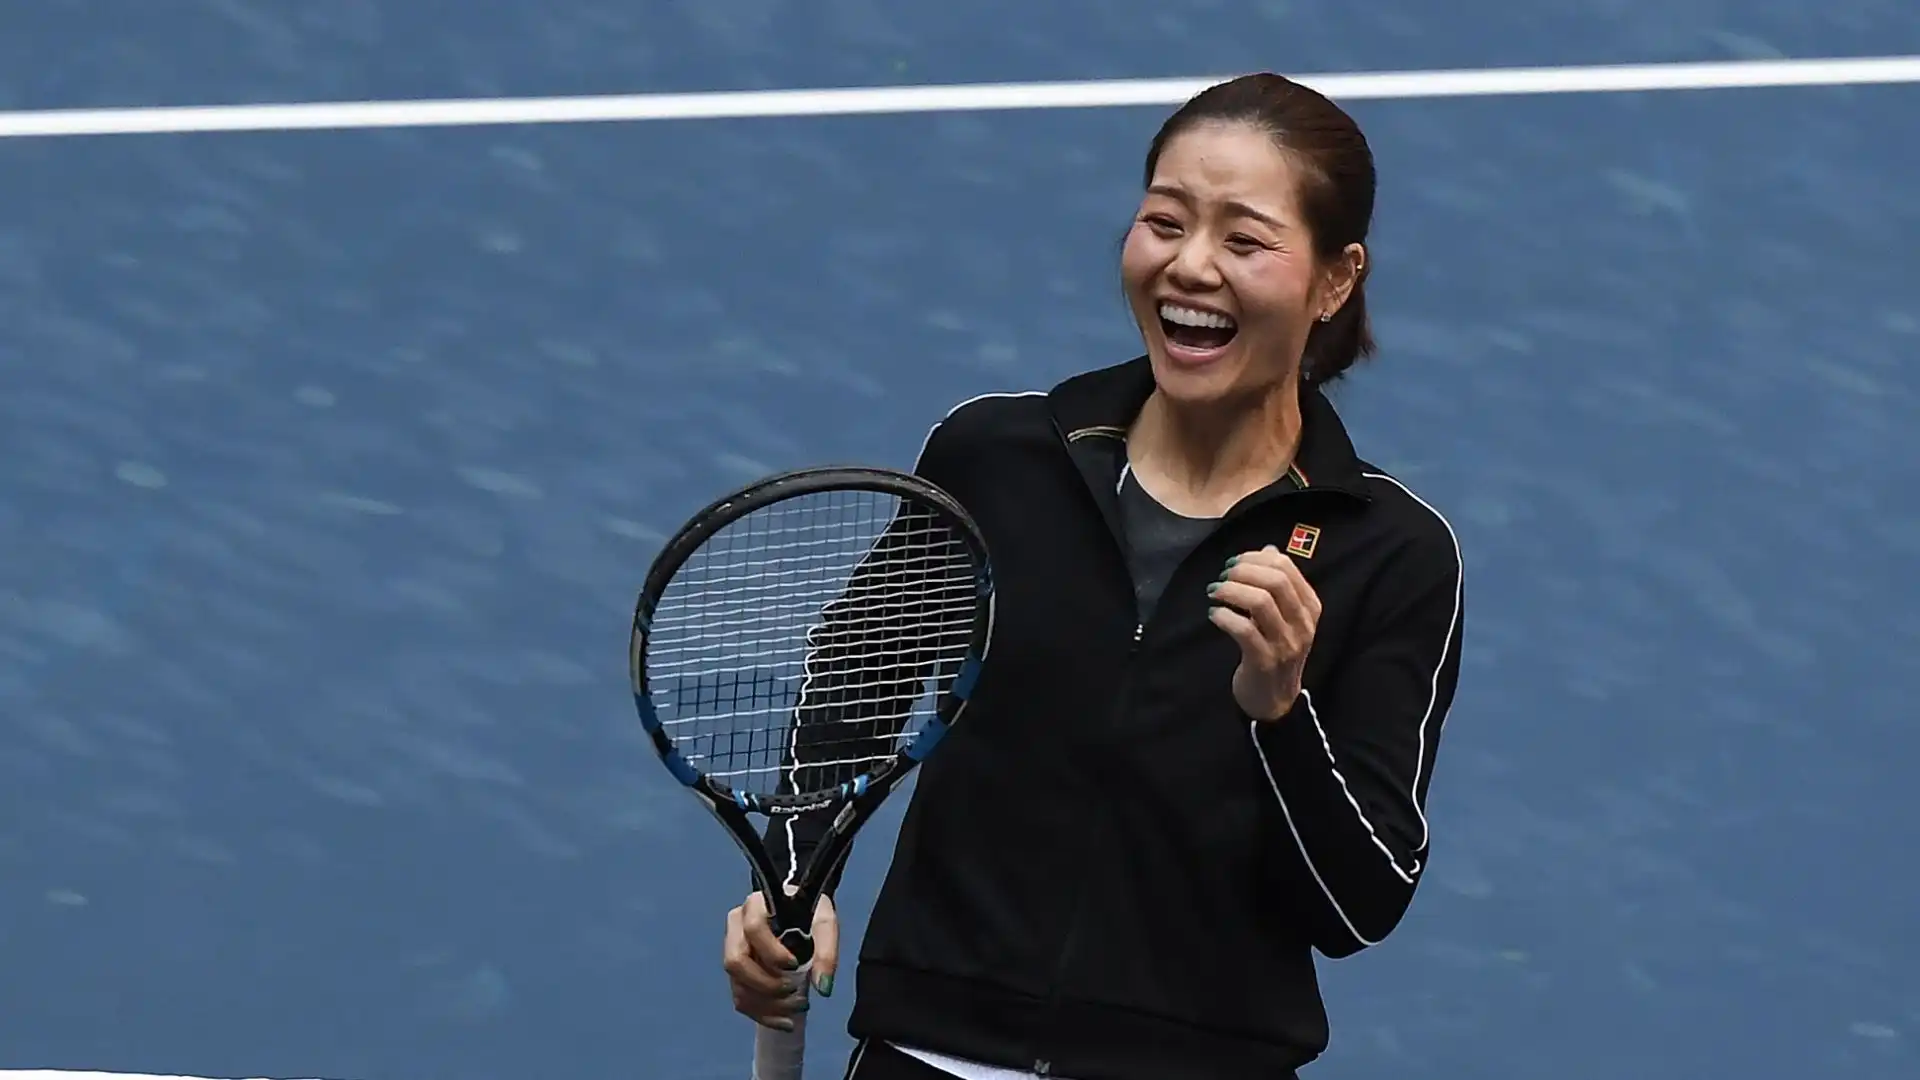 Li Na (Cina): patrimonio complessivo 50 milioni di dollari. Ha vinto 9 titoli WTA tra cui due tornei dello Slam, è stata la prima grande tennista cinese della storia